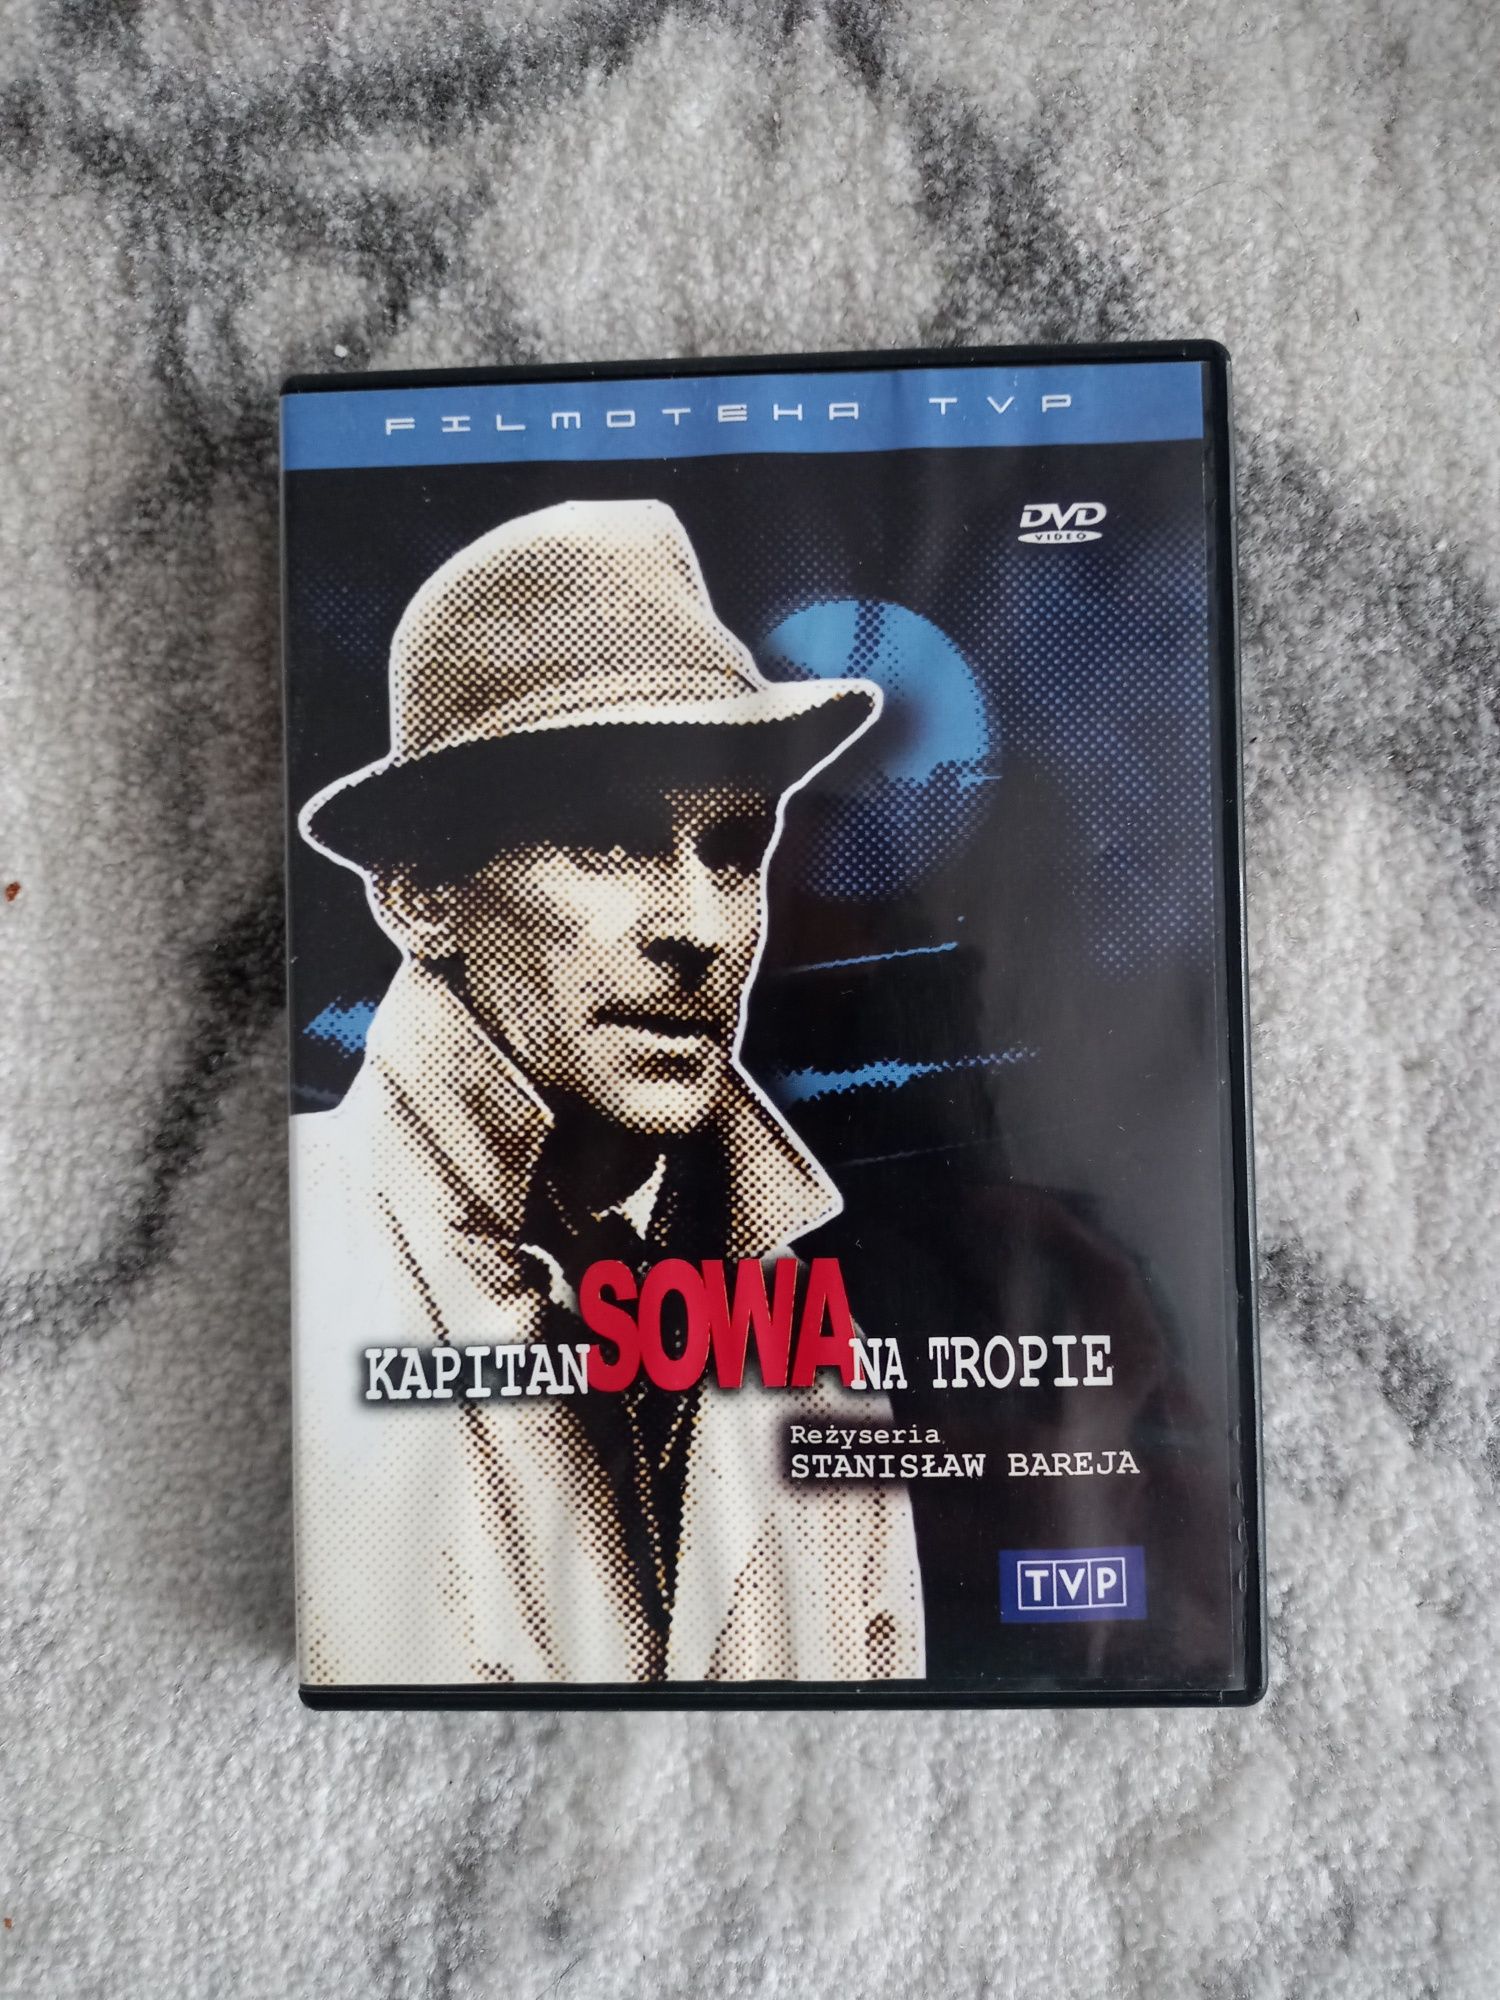 Kapitan Sowa na tropie - polski film na dvd.